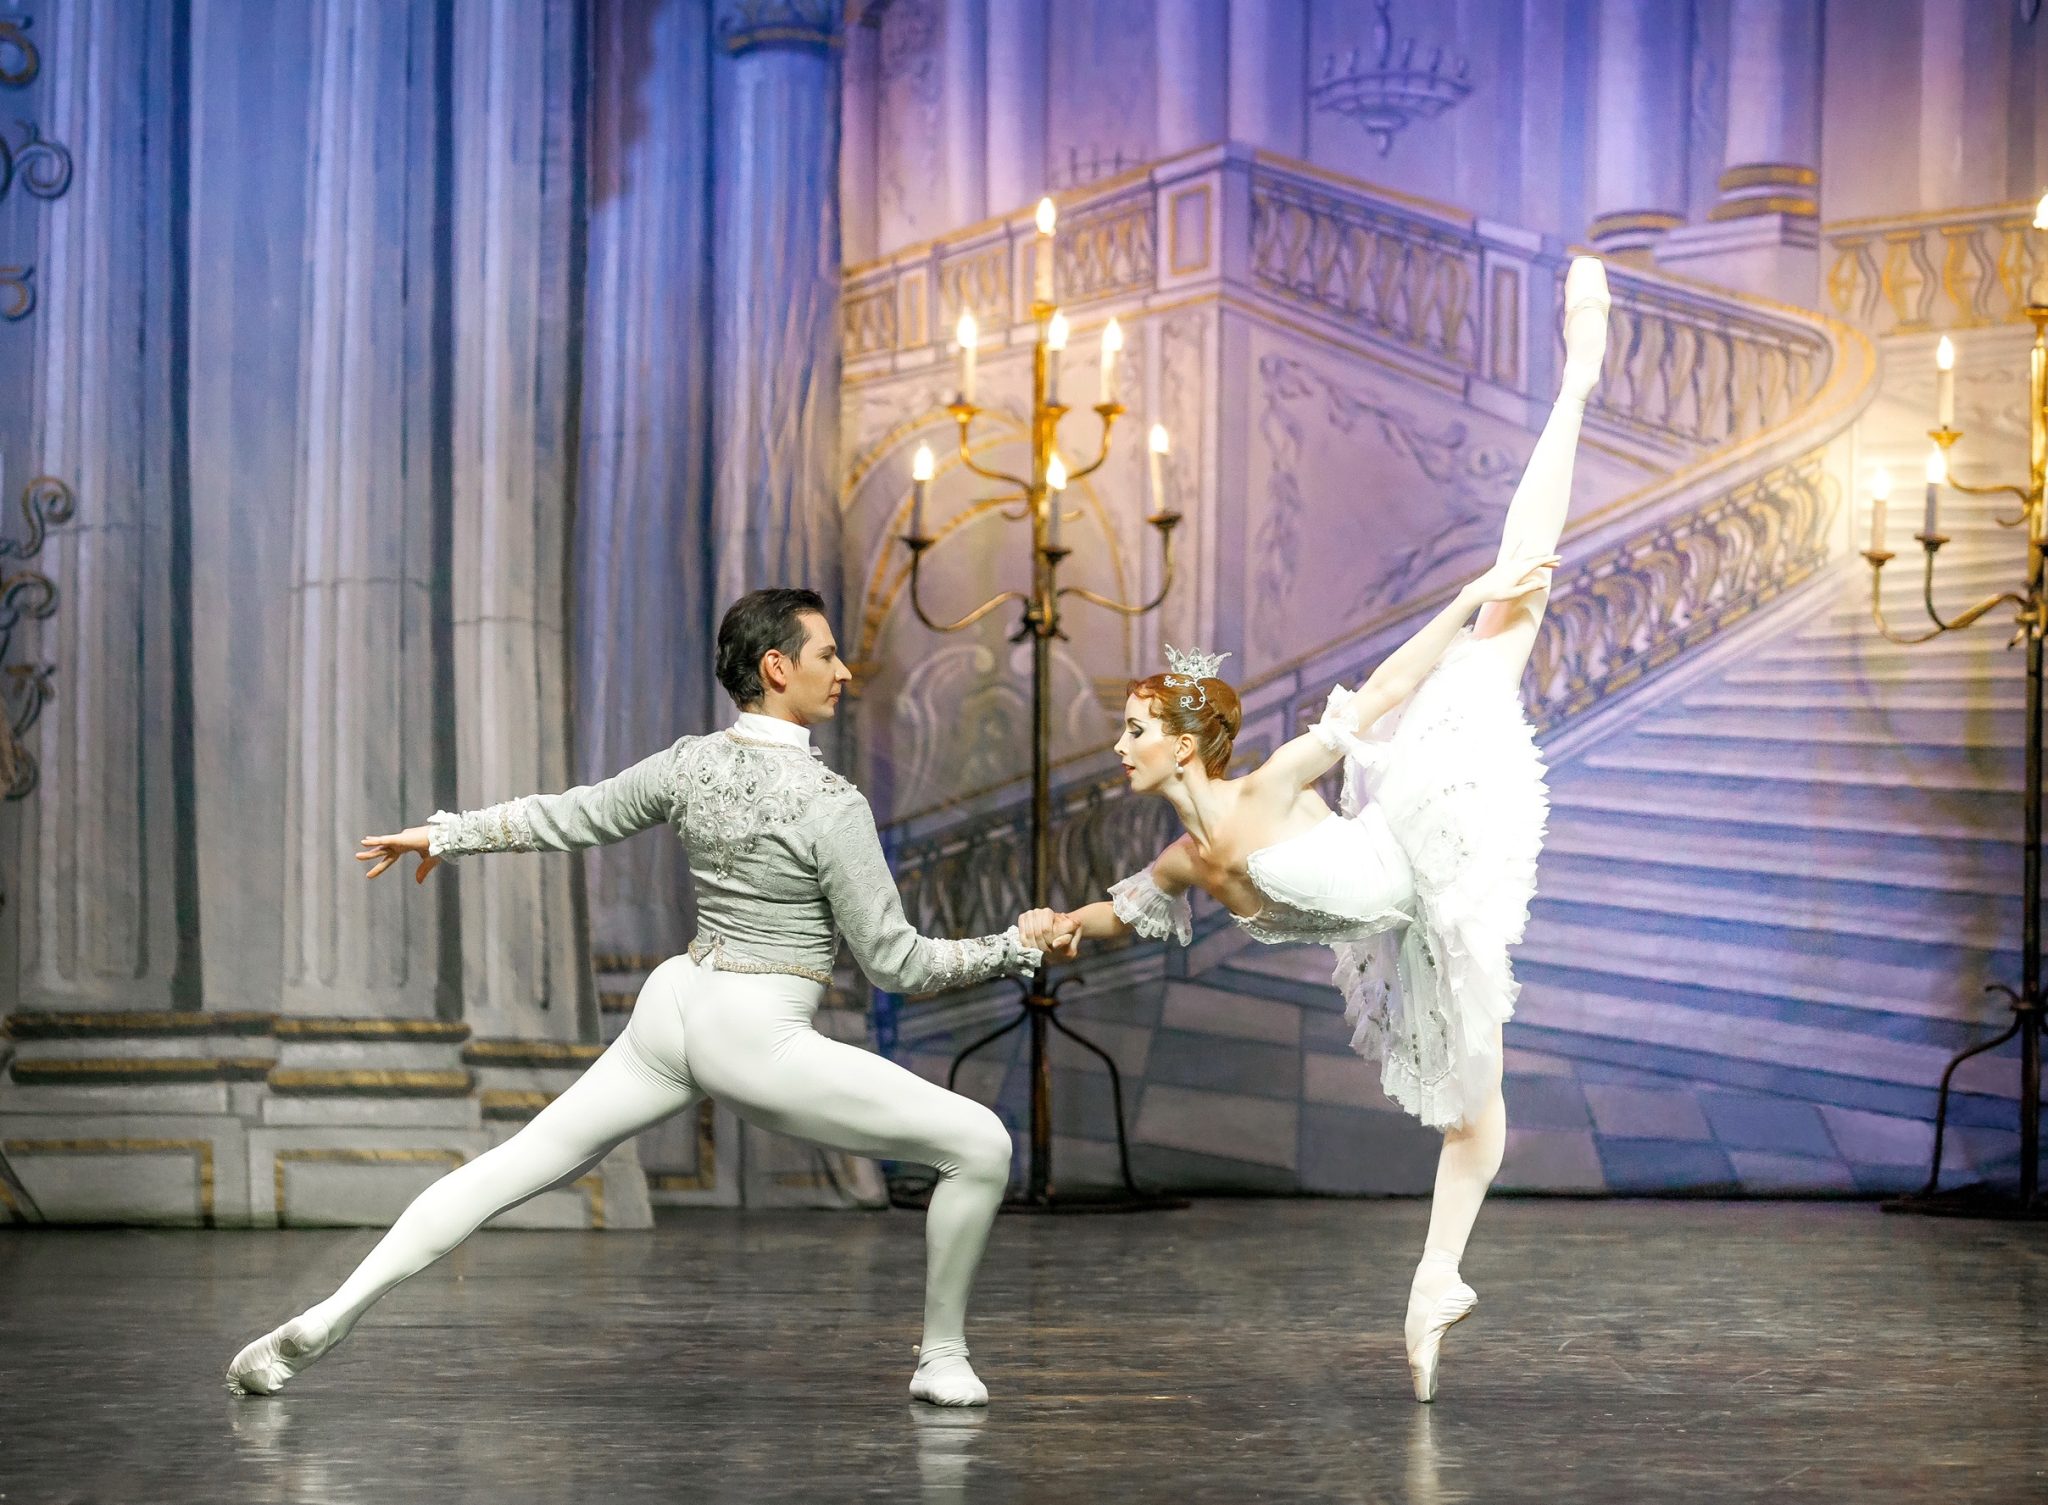 Vuelve el mundialmente aclamado Ballet Imperial Ruso con un programa ideal para todos los públicos dedicado a Tchaikovsky 1